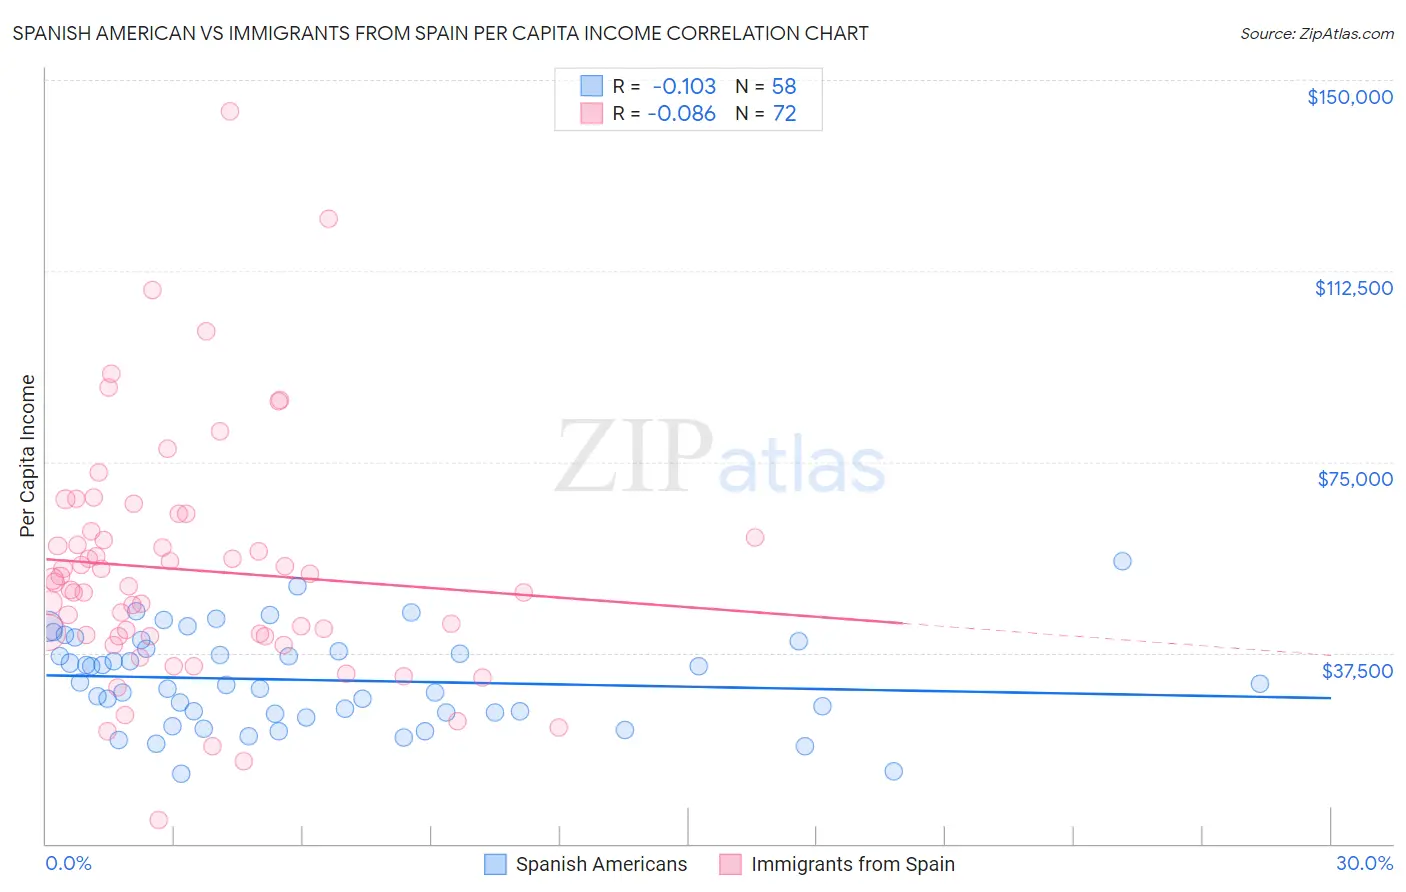 Spanish American vs Immigrants from Spain Per Capita Income